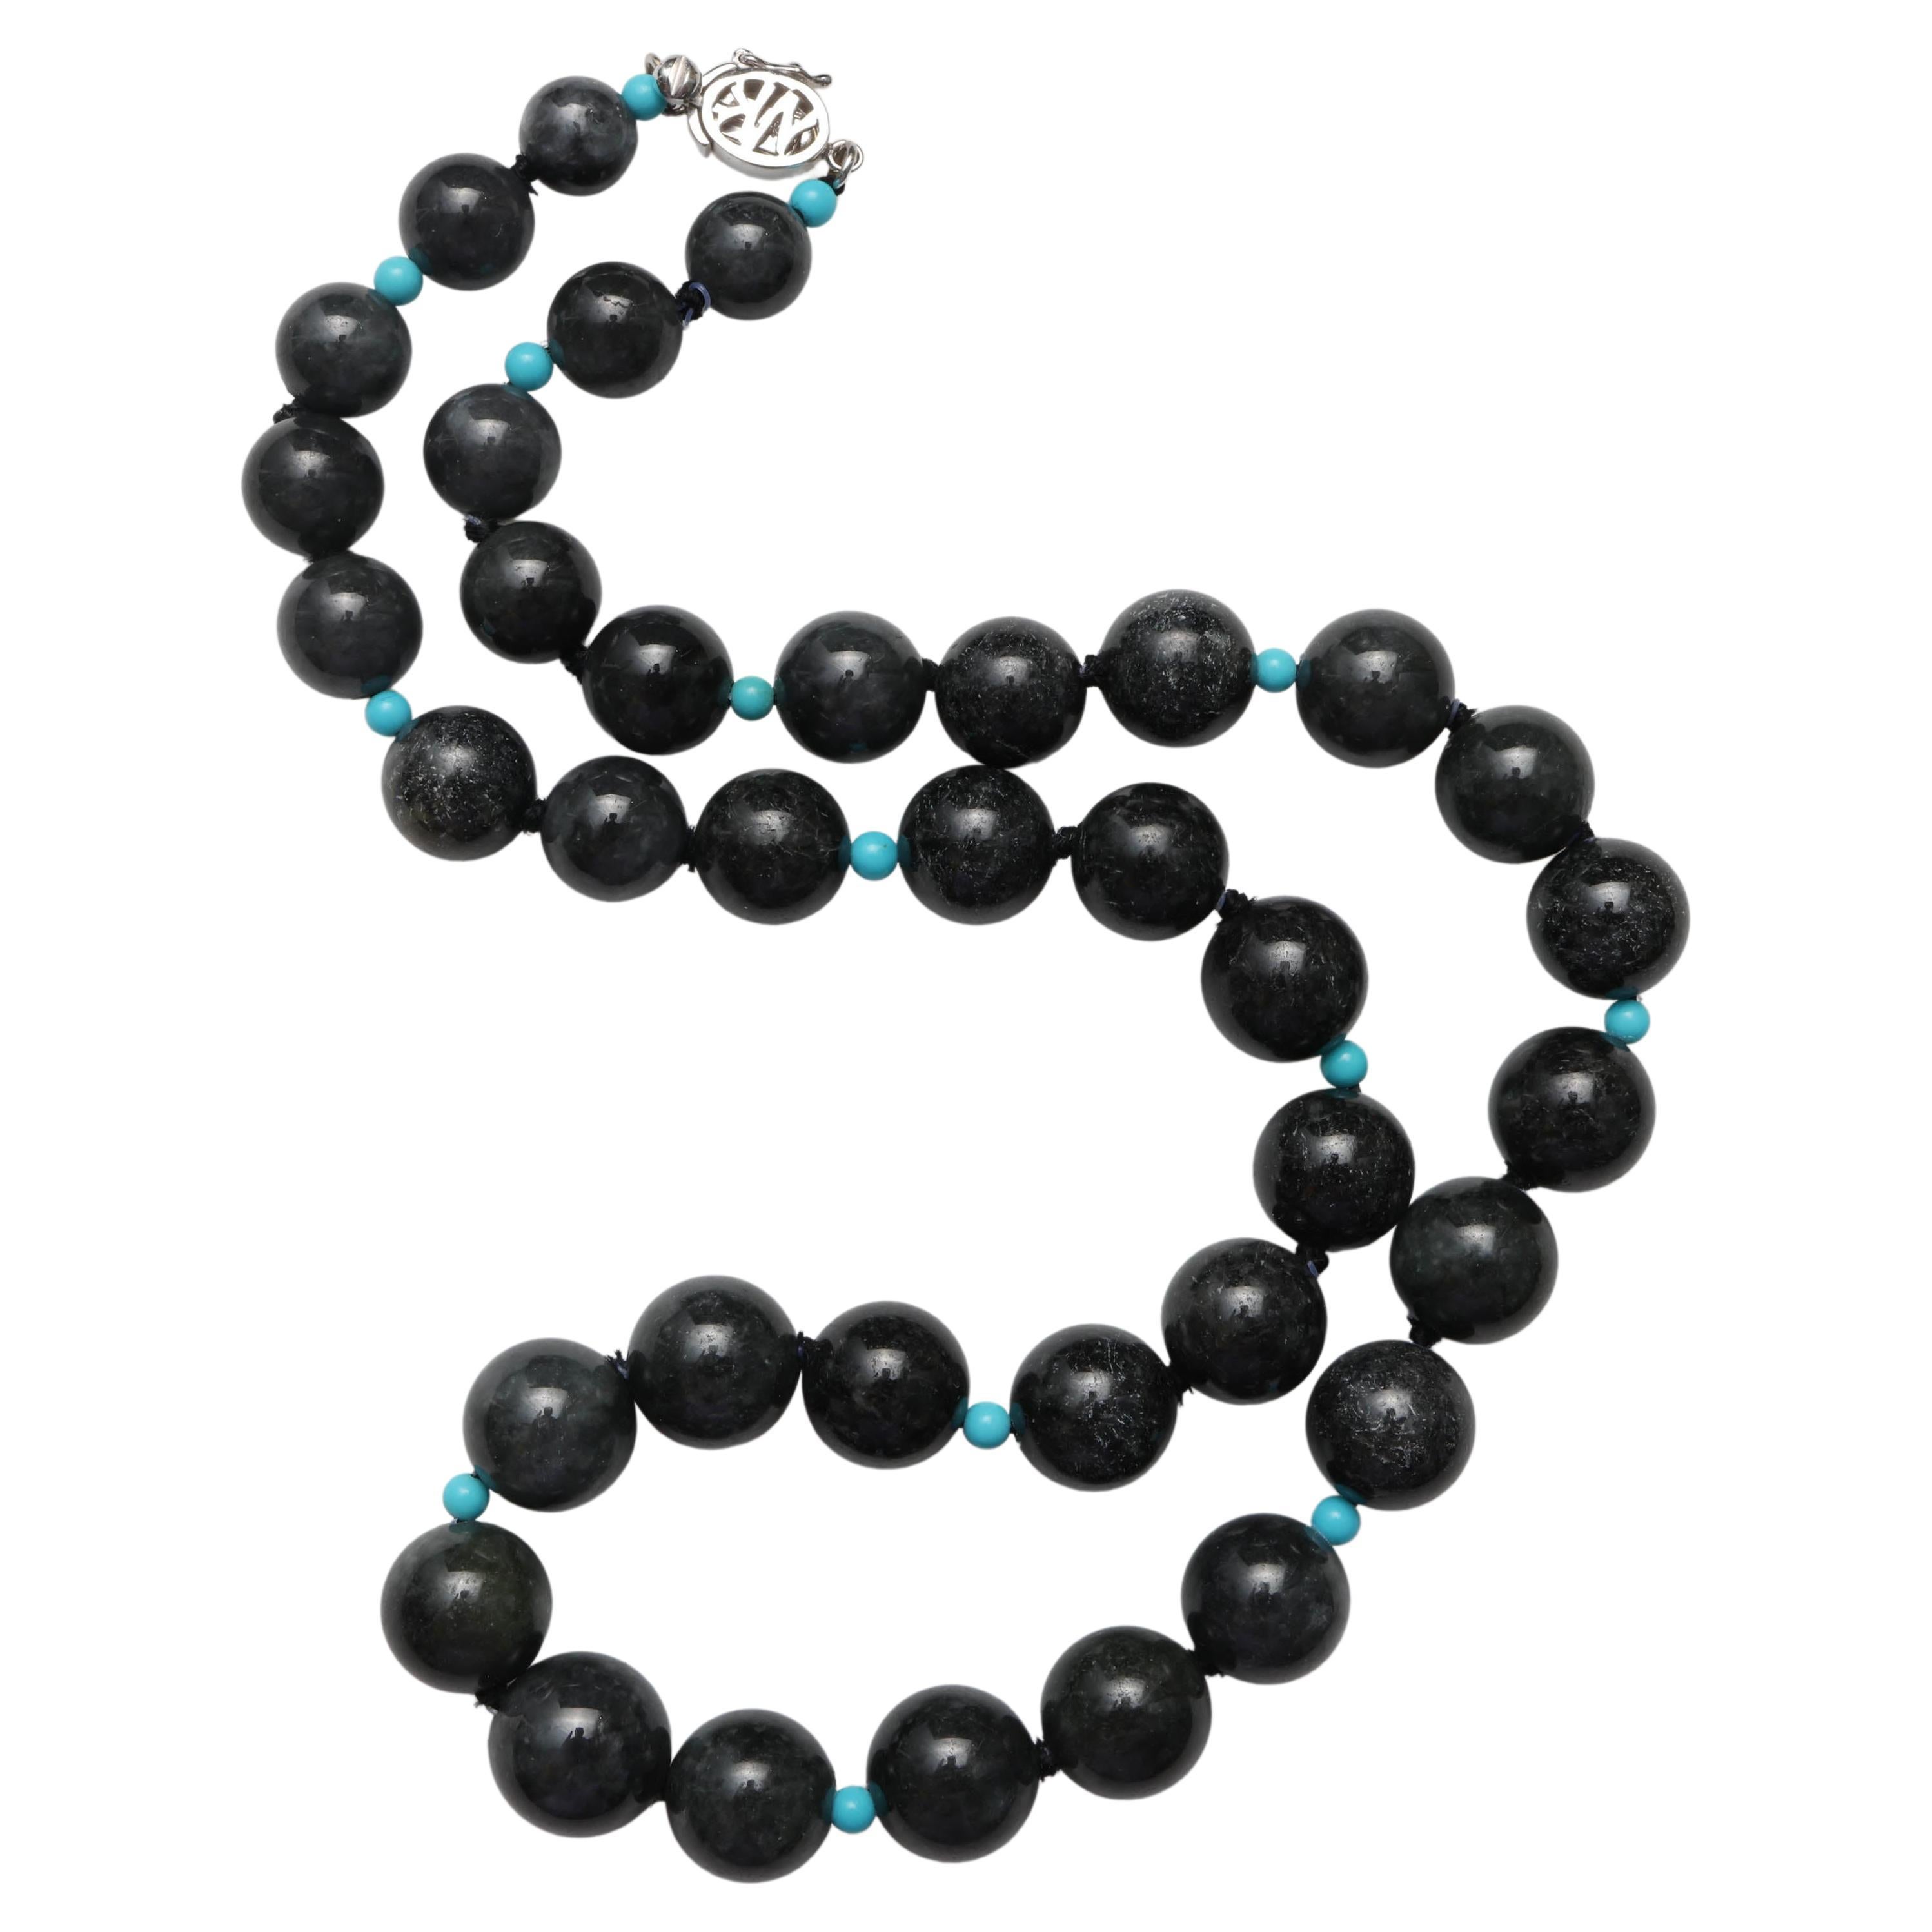 Collier de Jade noir avec perles de Turquoise Jadeite certifiée non traitée